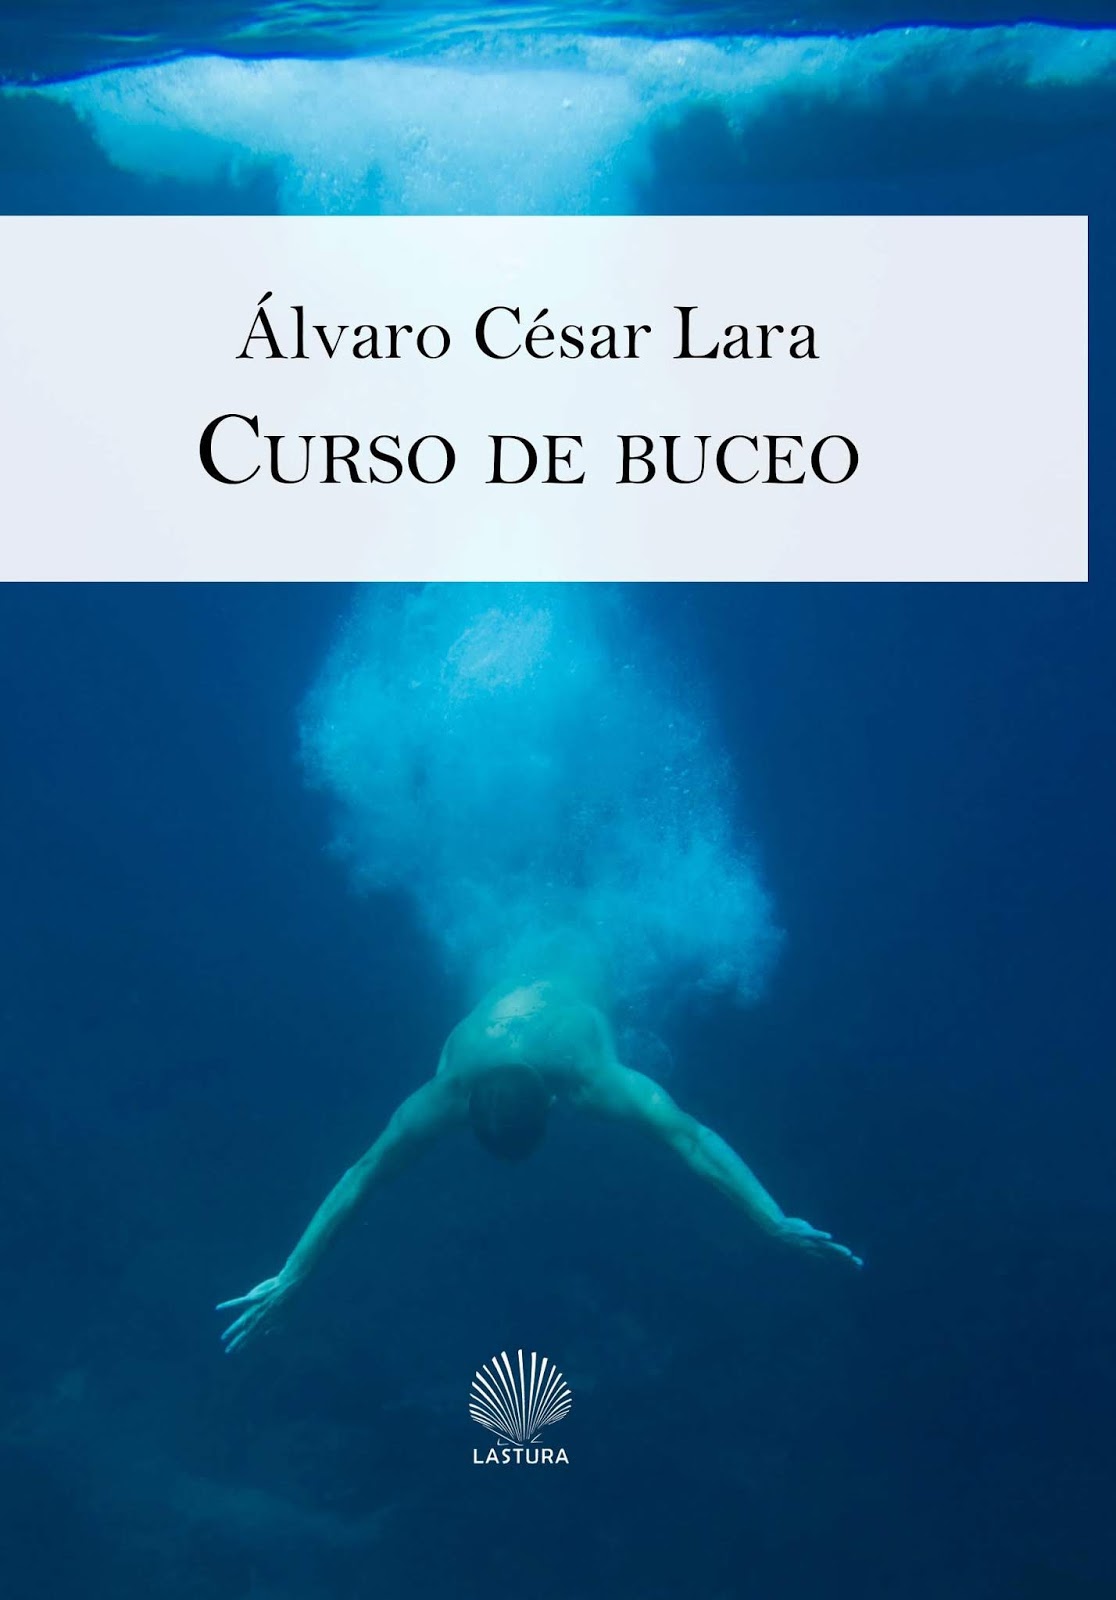 NOVEDAD: "Curso de buceo". (Ed. Lastura, marzo 2020)